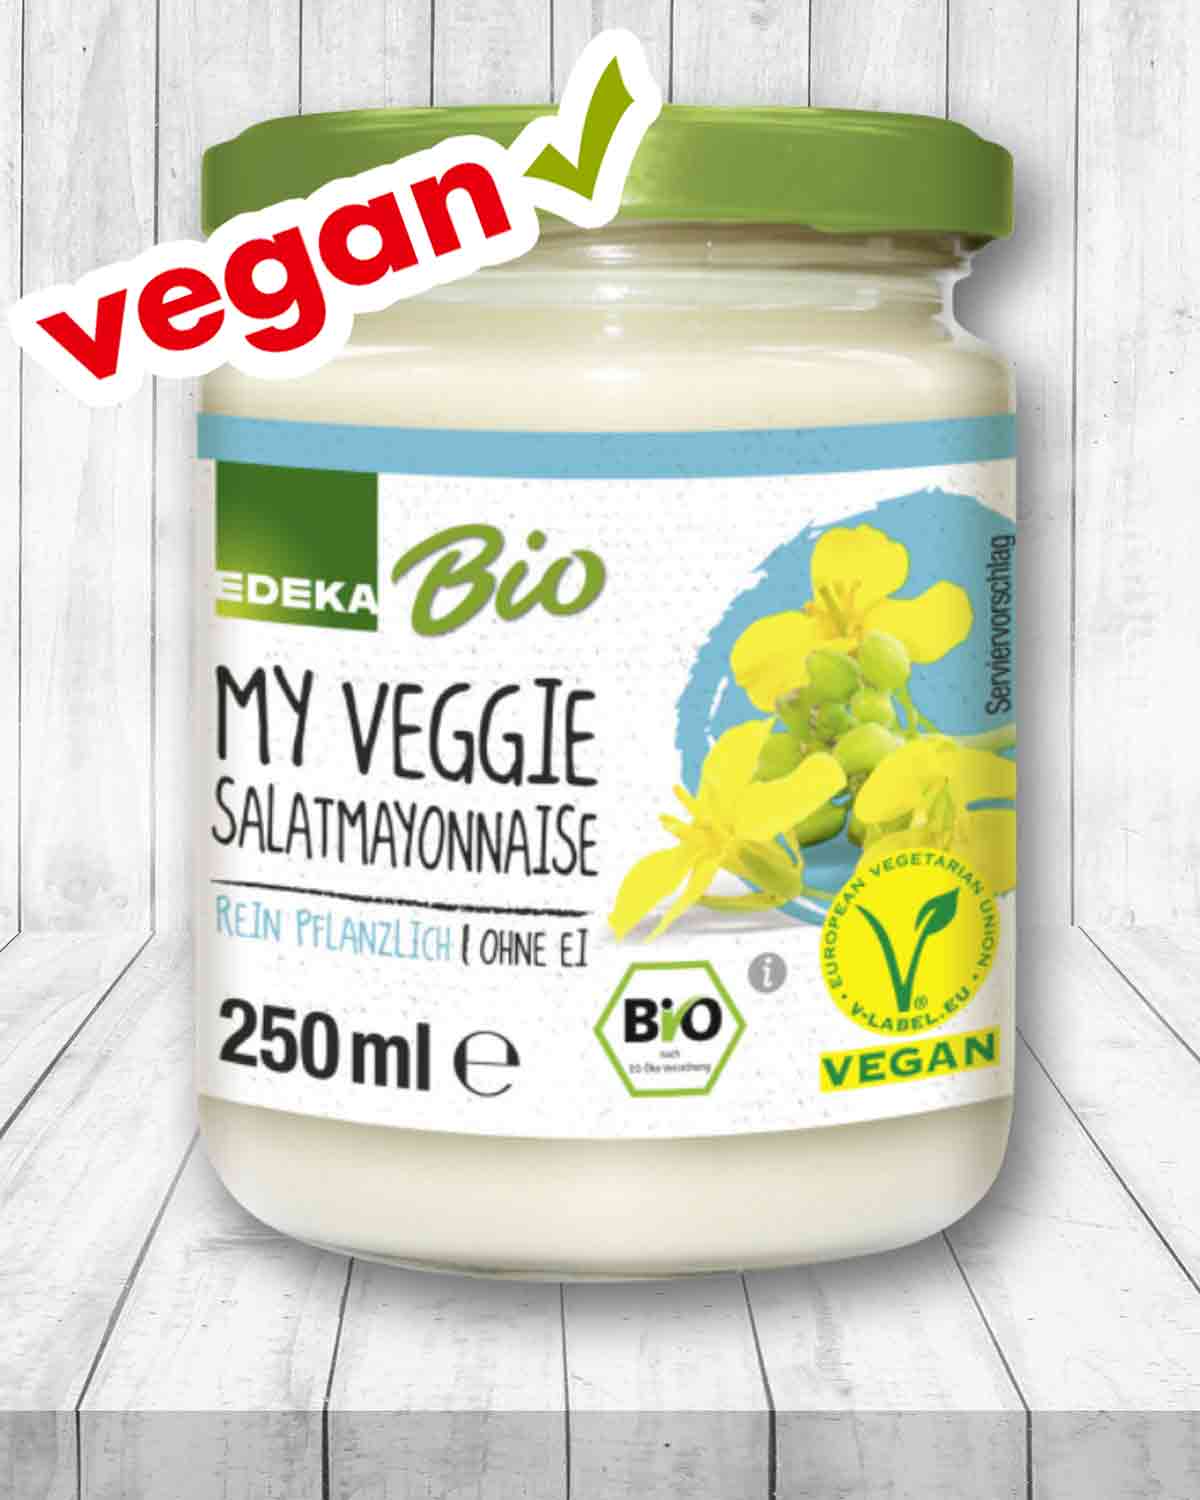 Edeka Bio My Veggie Vegane Salatmayonnaise ohne Ei